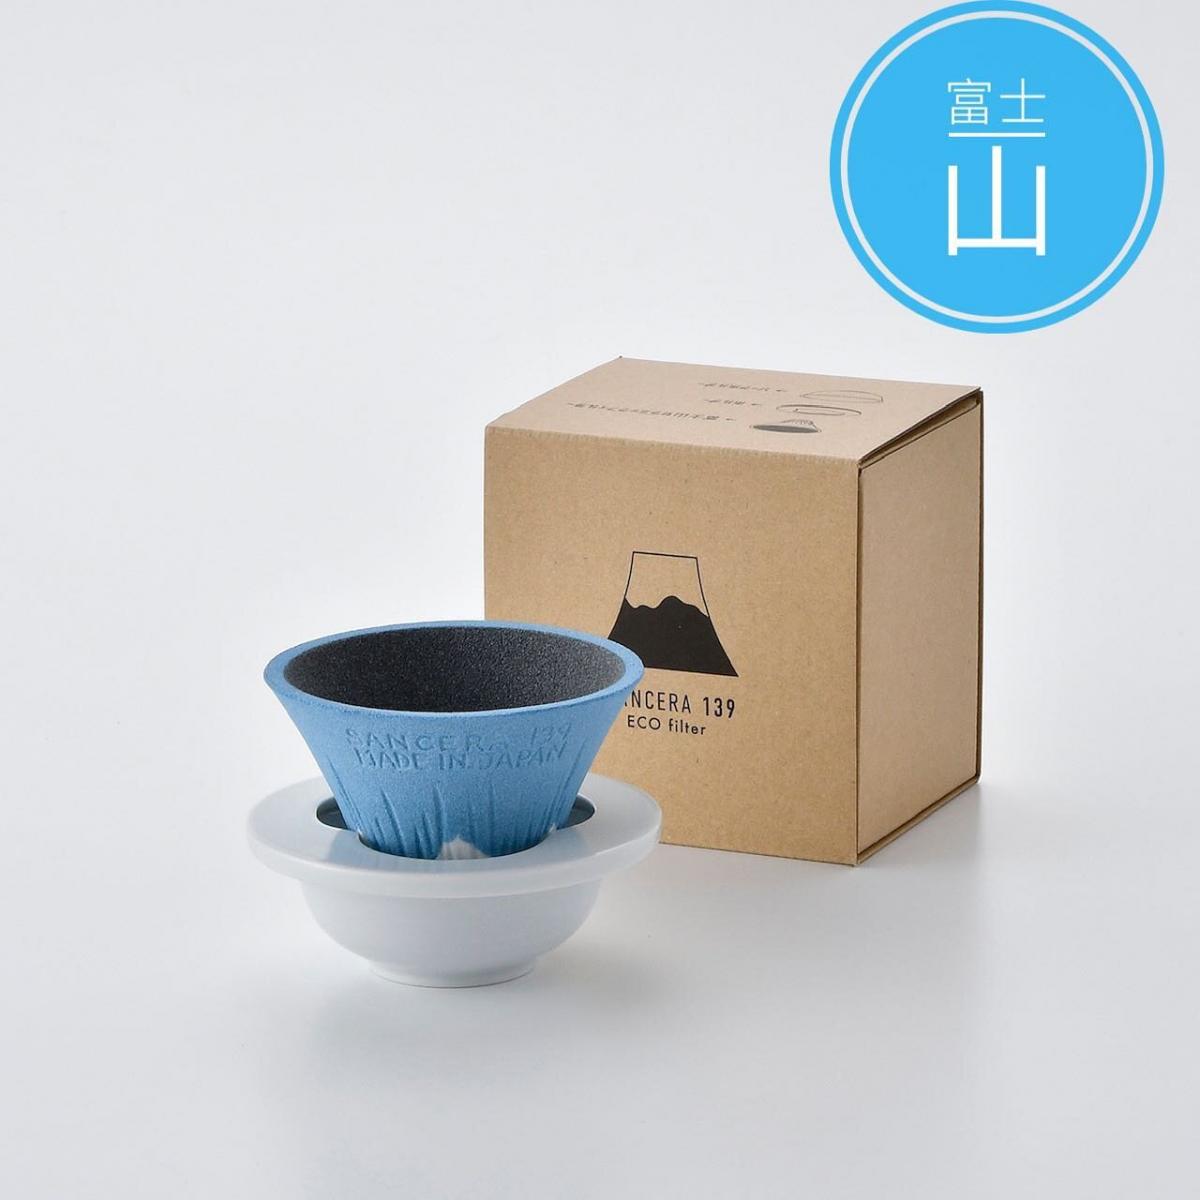 OTHER - SANCERA 139 COFIL fuji ceramic filter cup｜Coffee filter cup-Ao Fuji (blue)